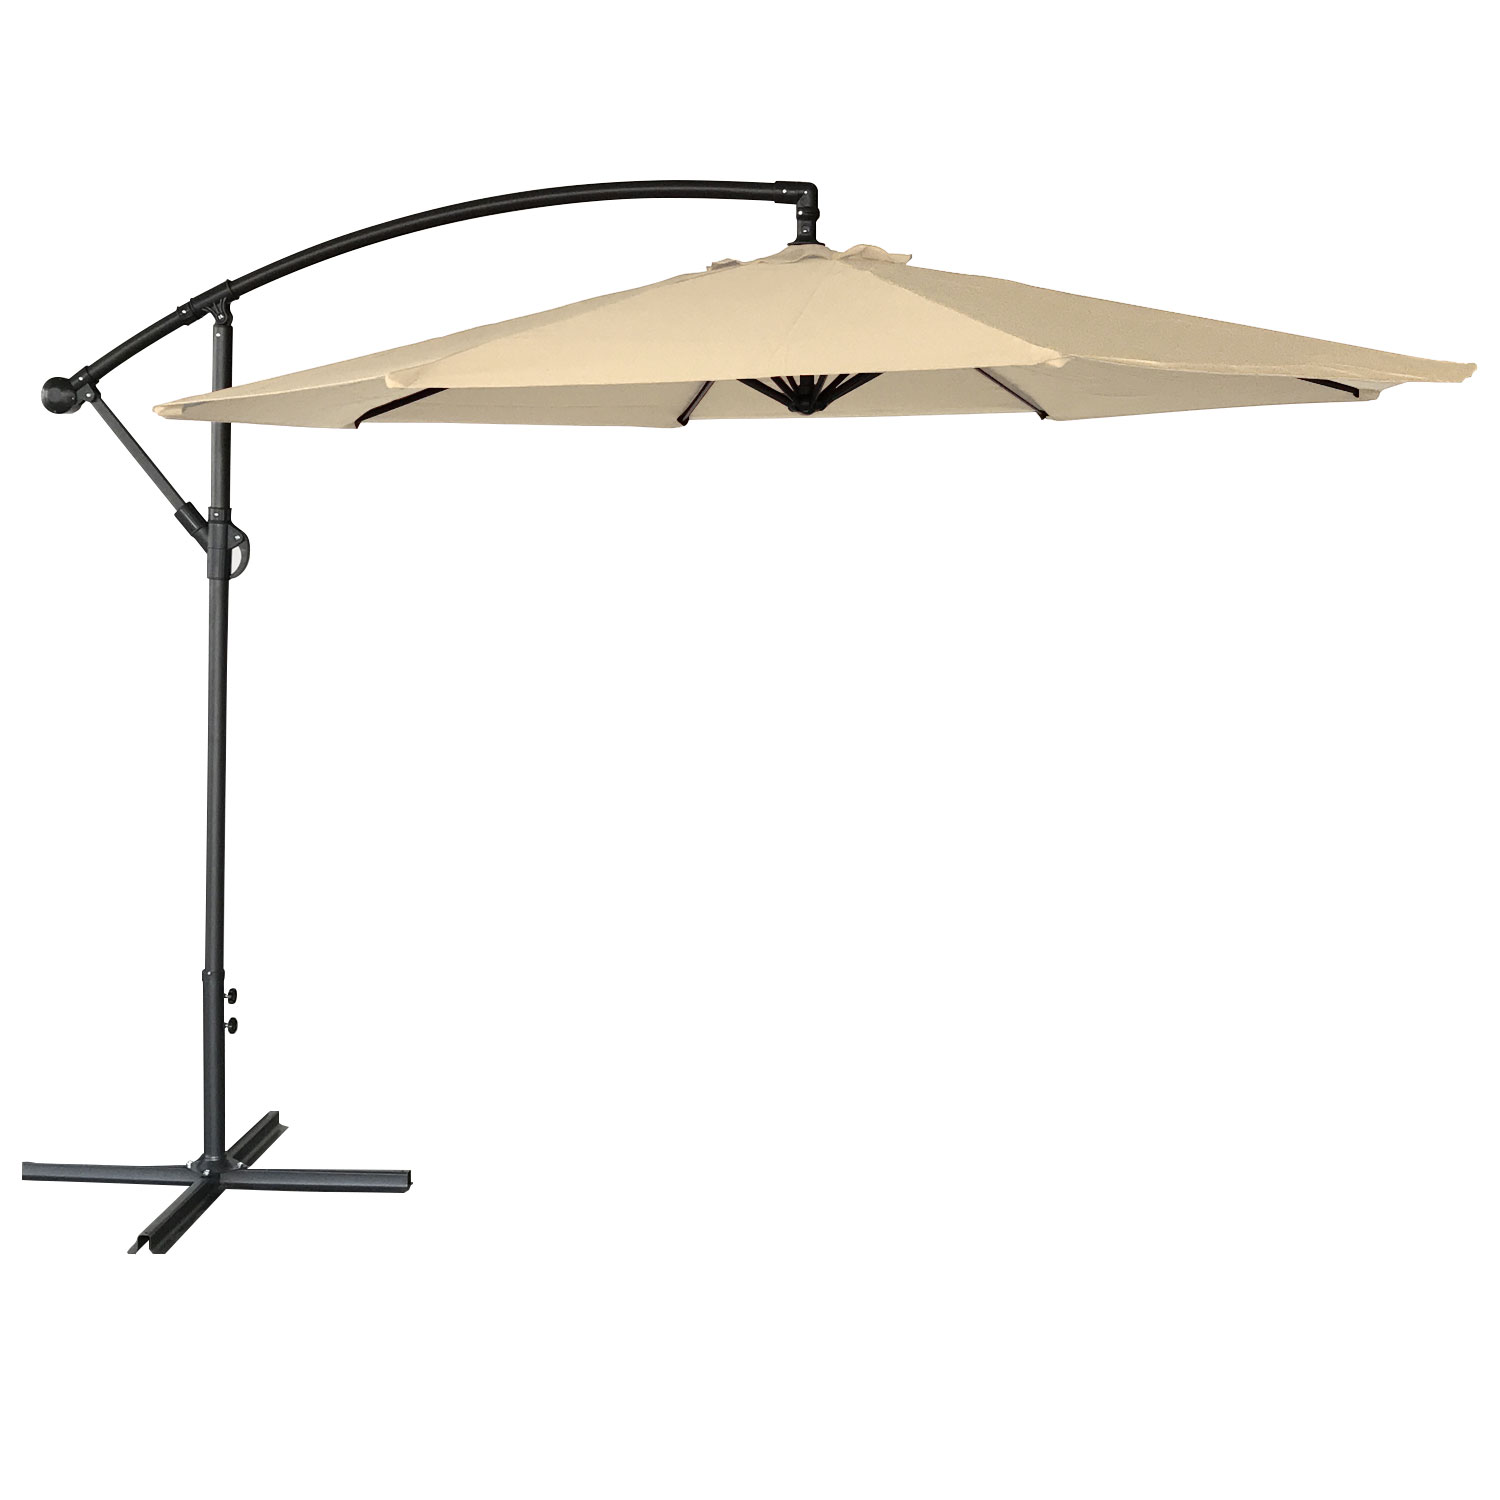 OAHU offset umbrella redondo de 3m de diâmetro bege